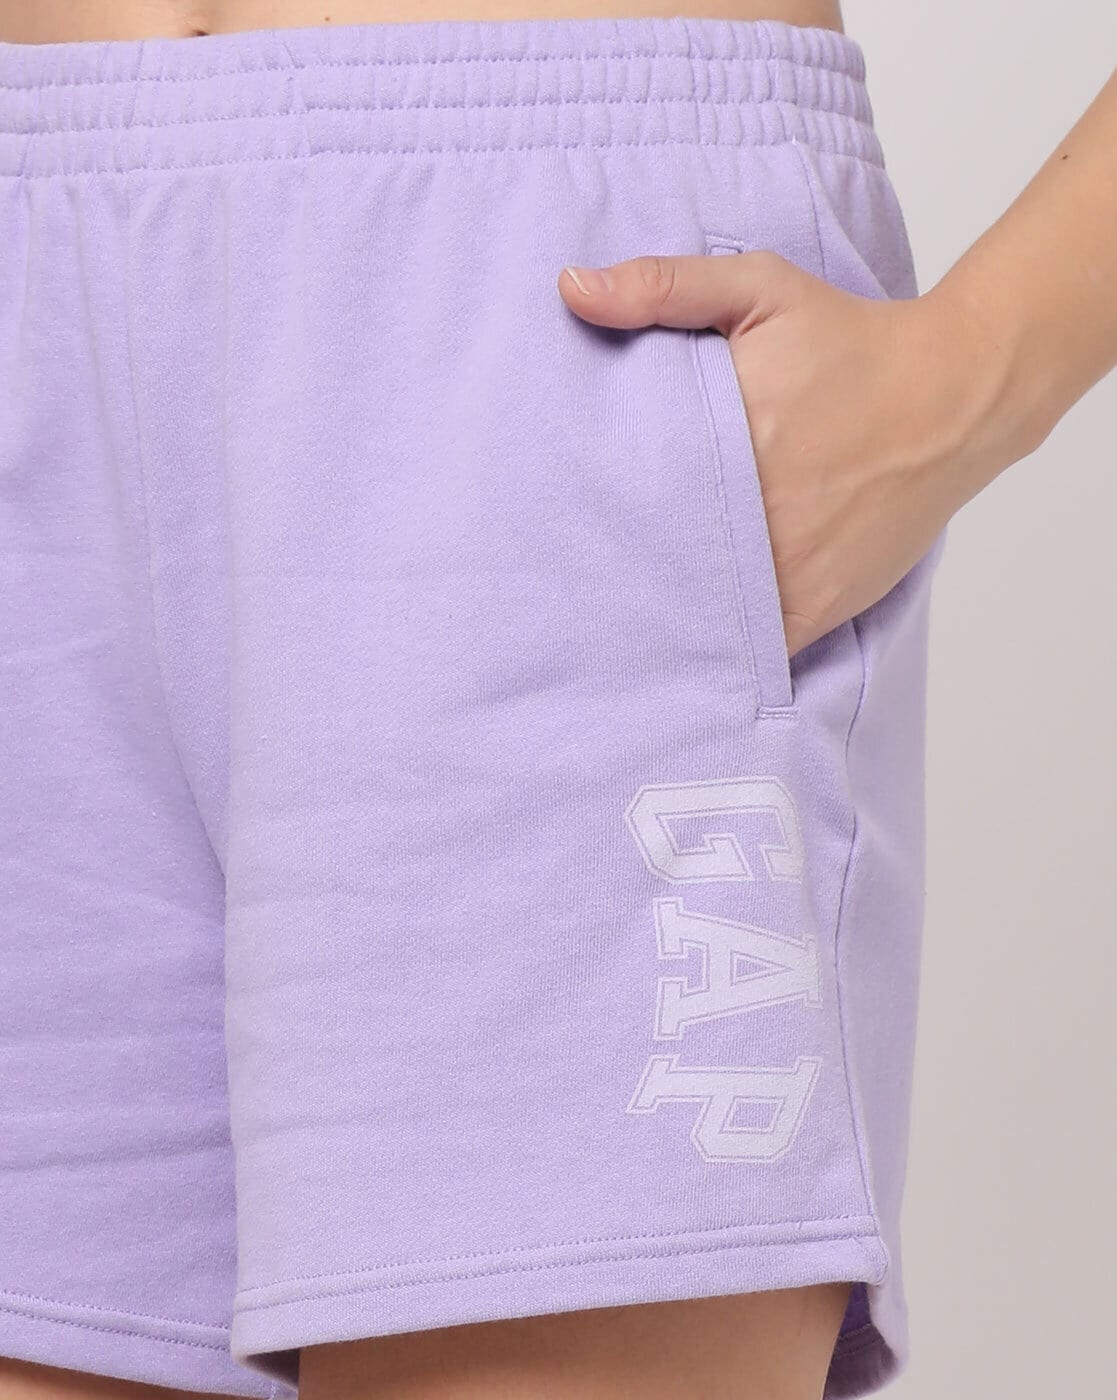 Buy Purple Shorts for Women by GAP Online